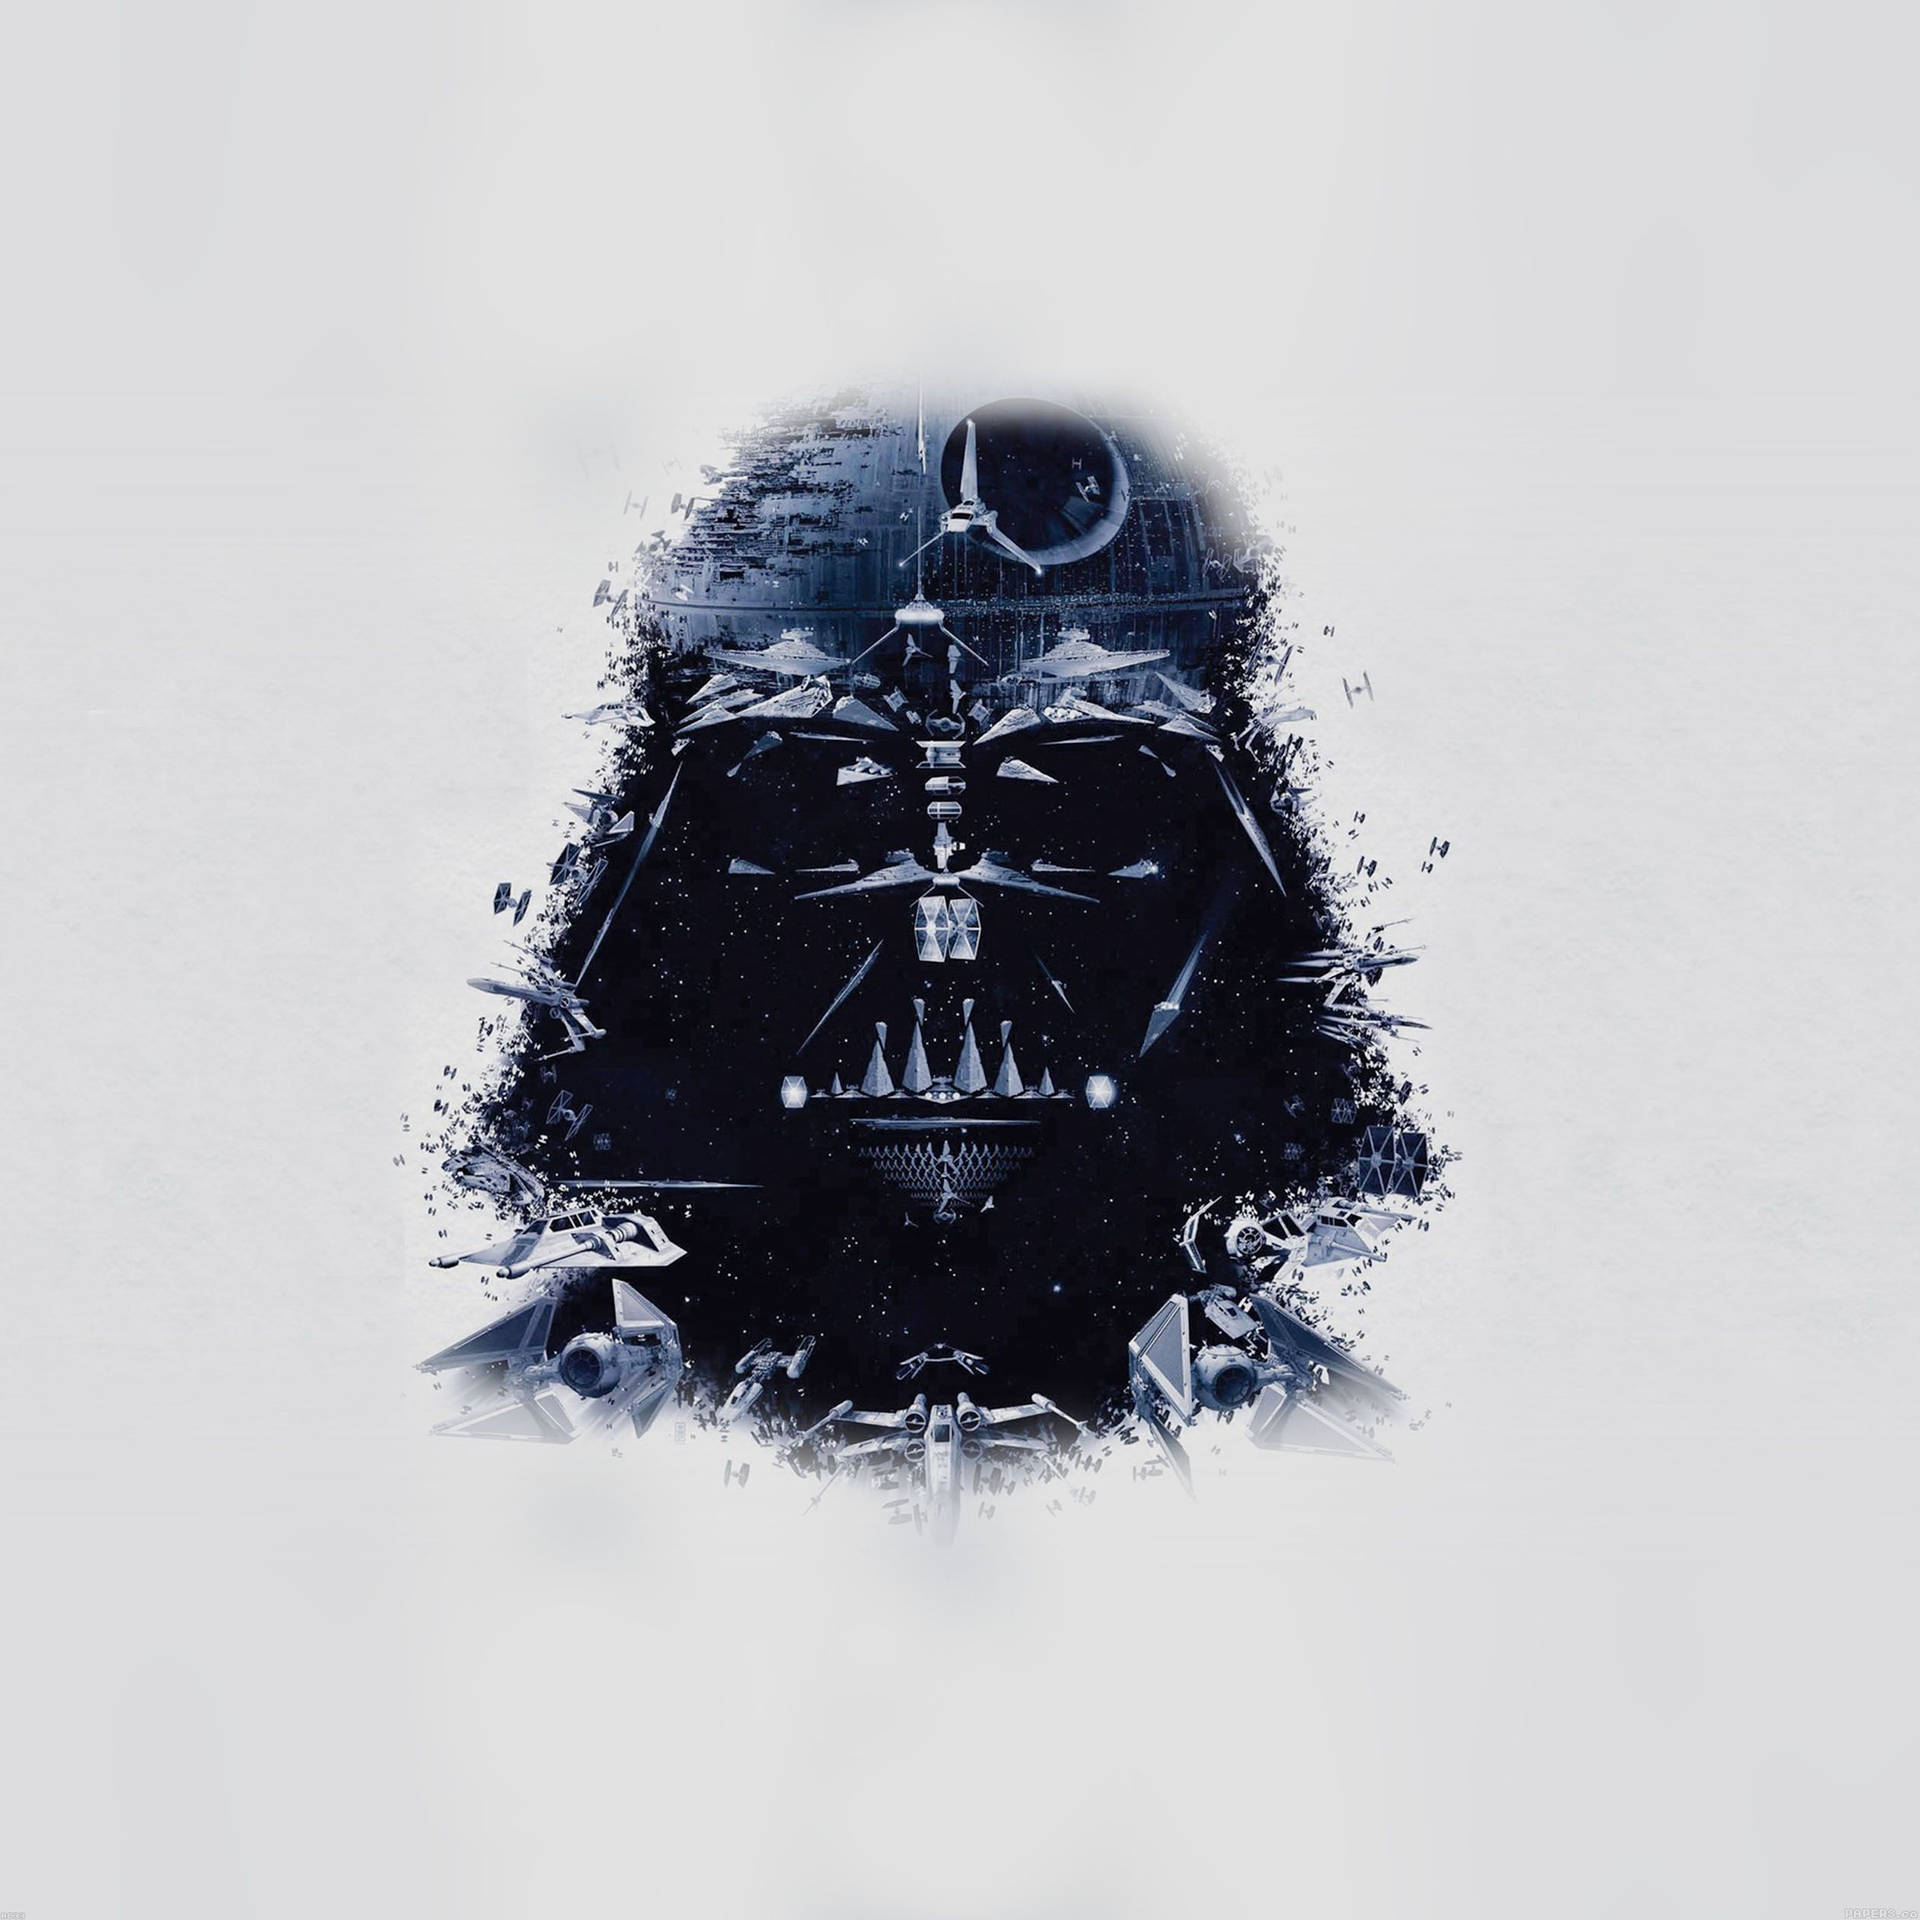 Star Wars Ipad Darth Vader Artwork Wallpaper